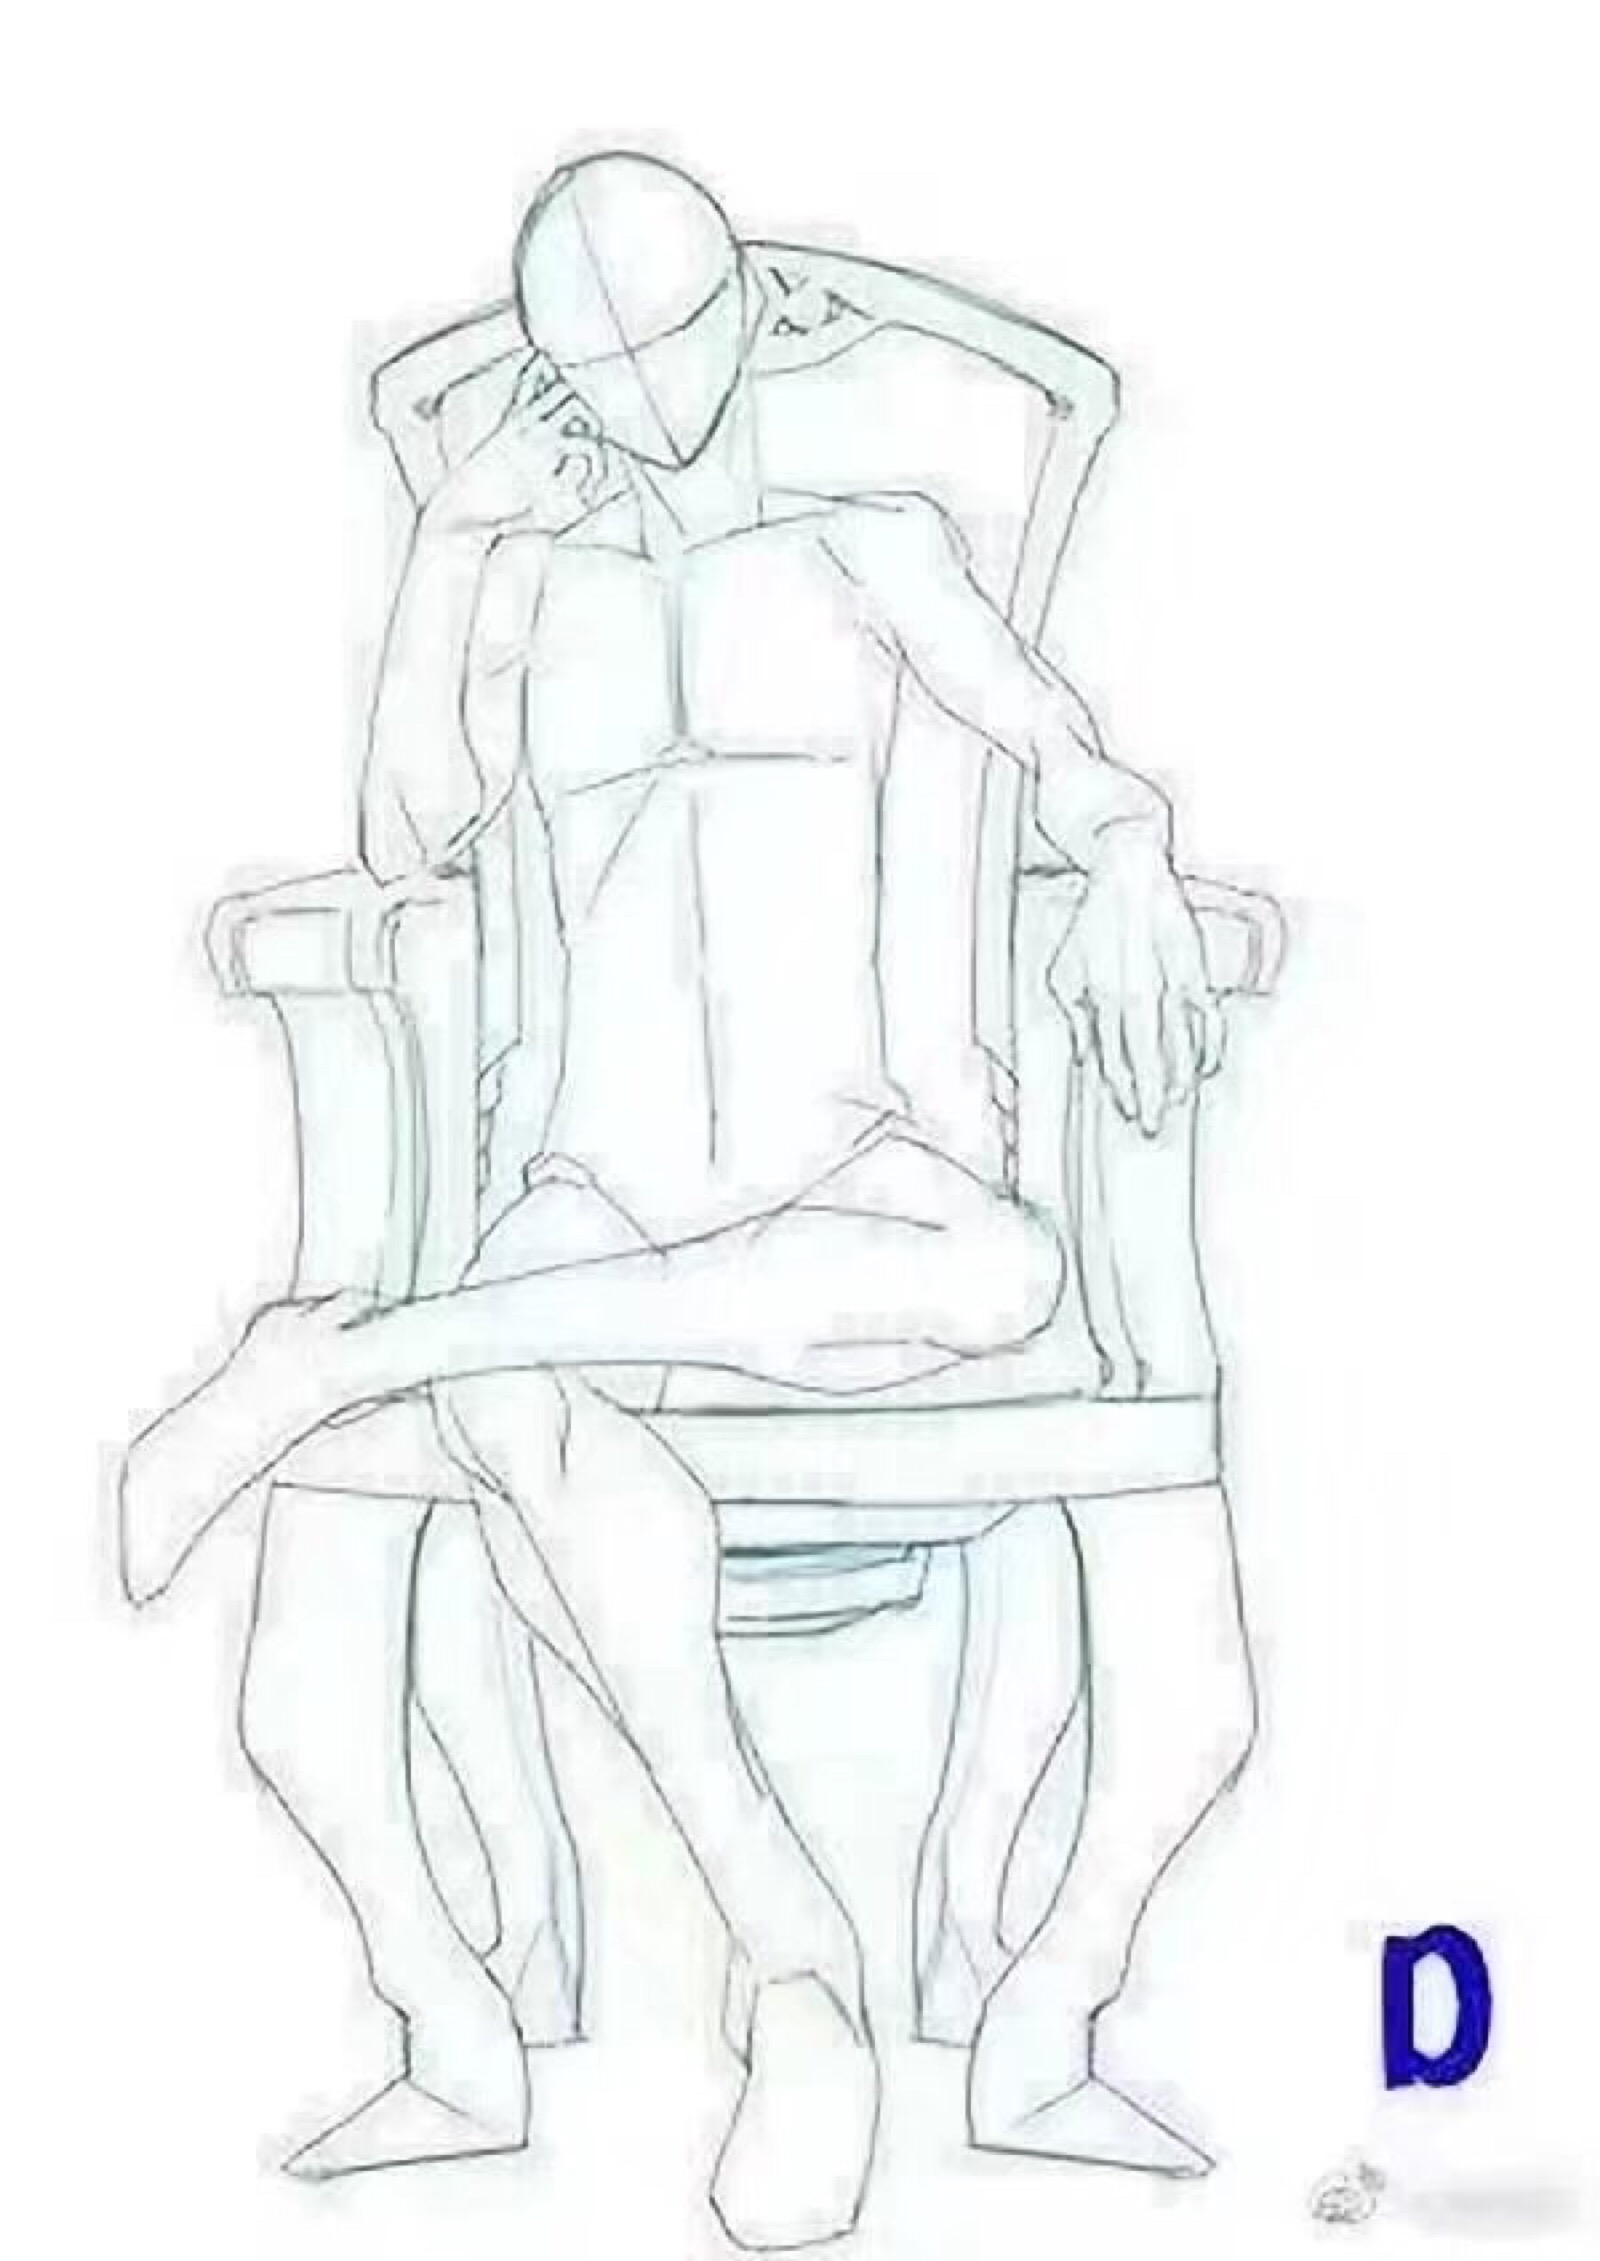 盘腿坐人体结构图绘画图片